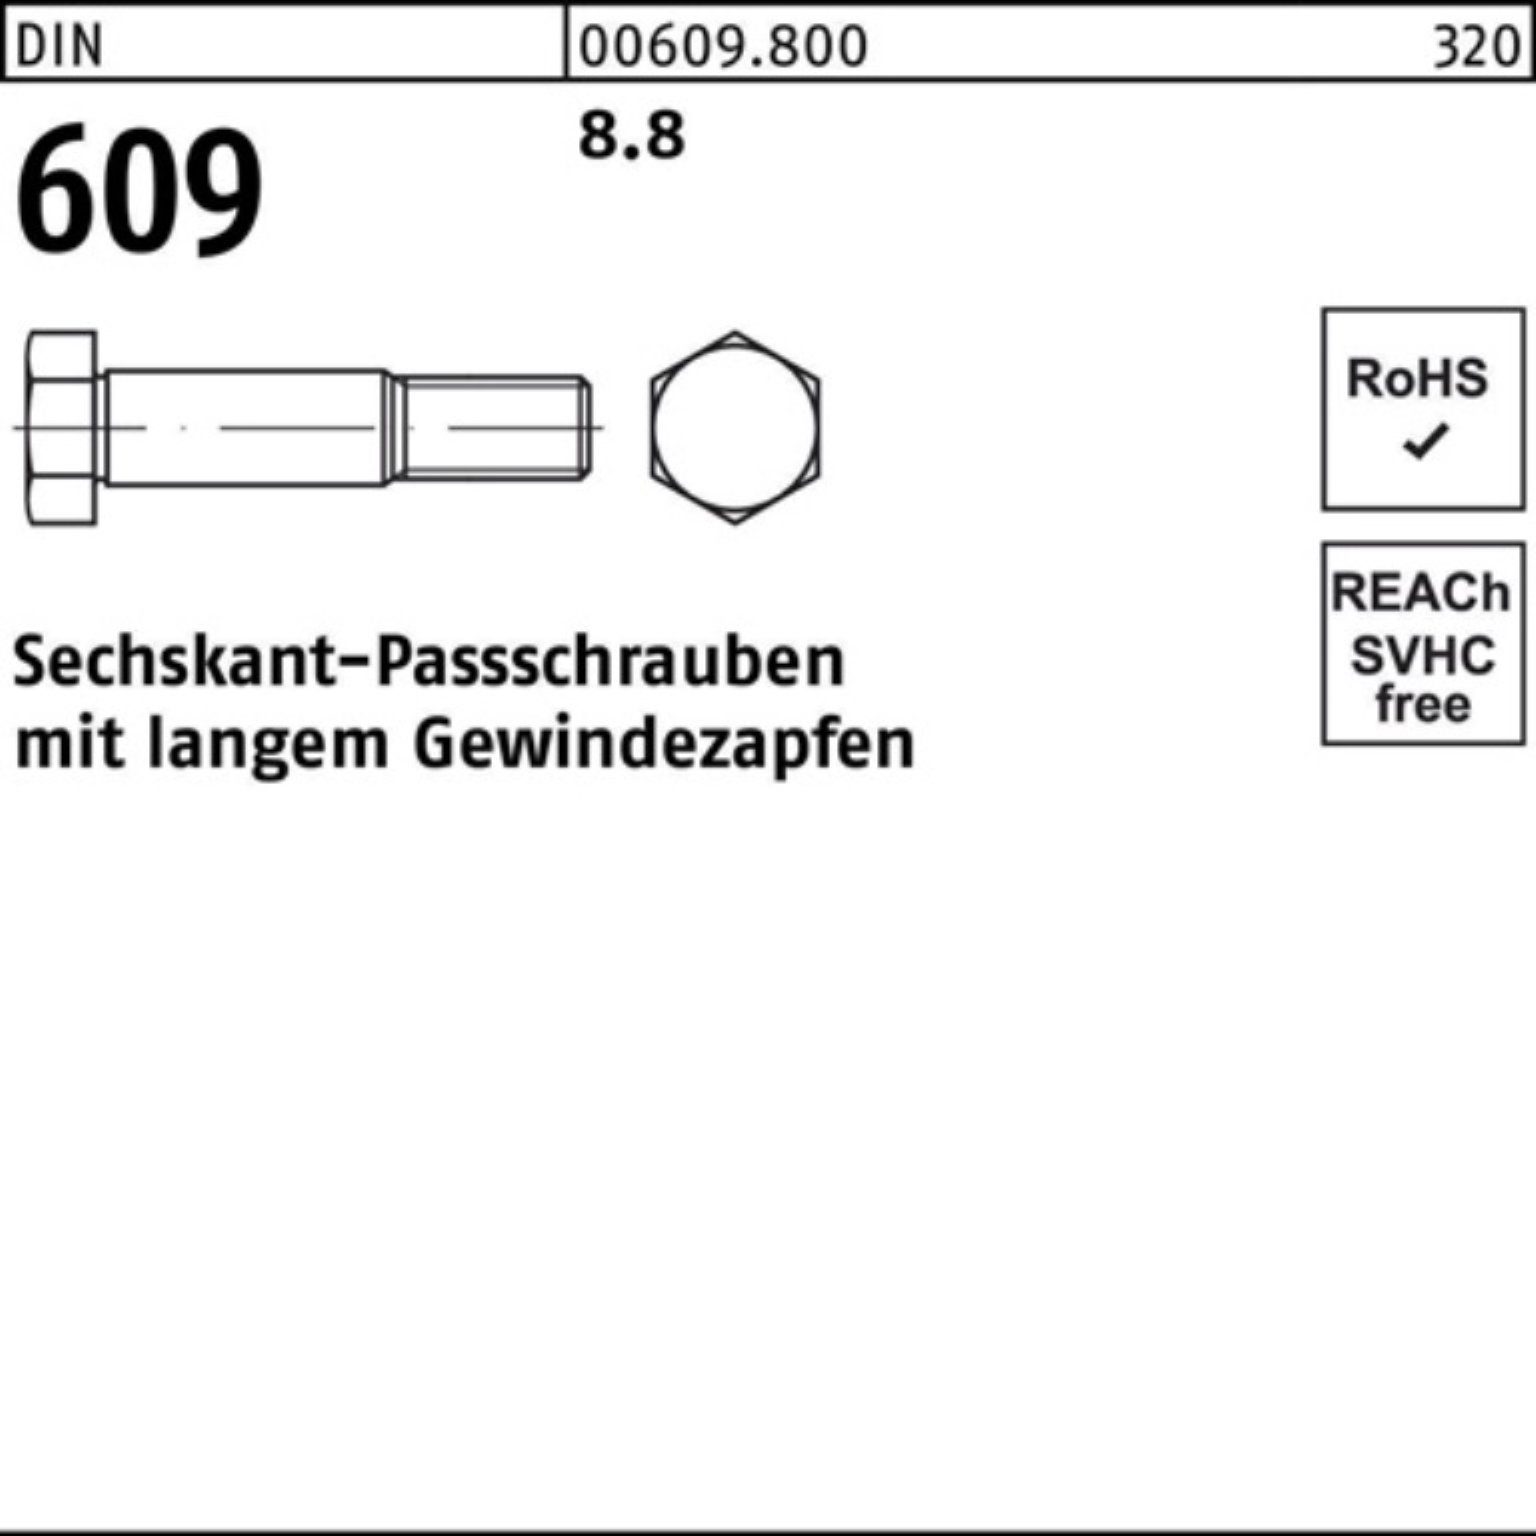 Gewindezapfen Sechskantpassschraube Schraube Reyher DIN M12x 60 100er langem 609 Pack